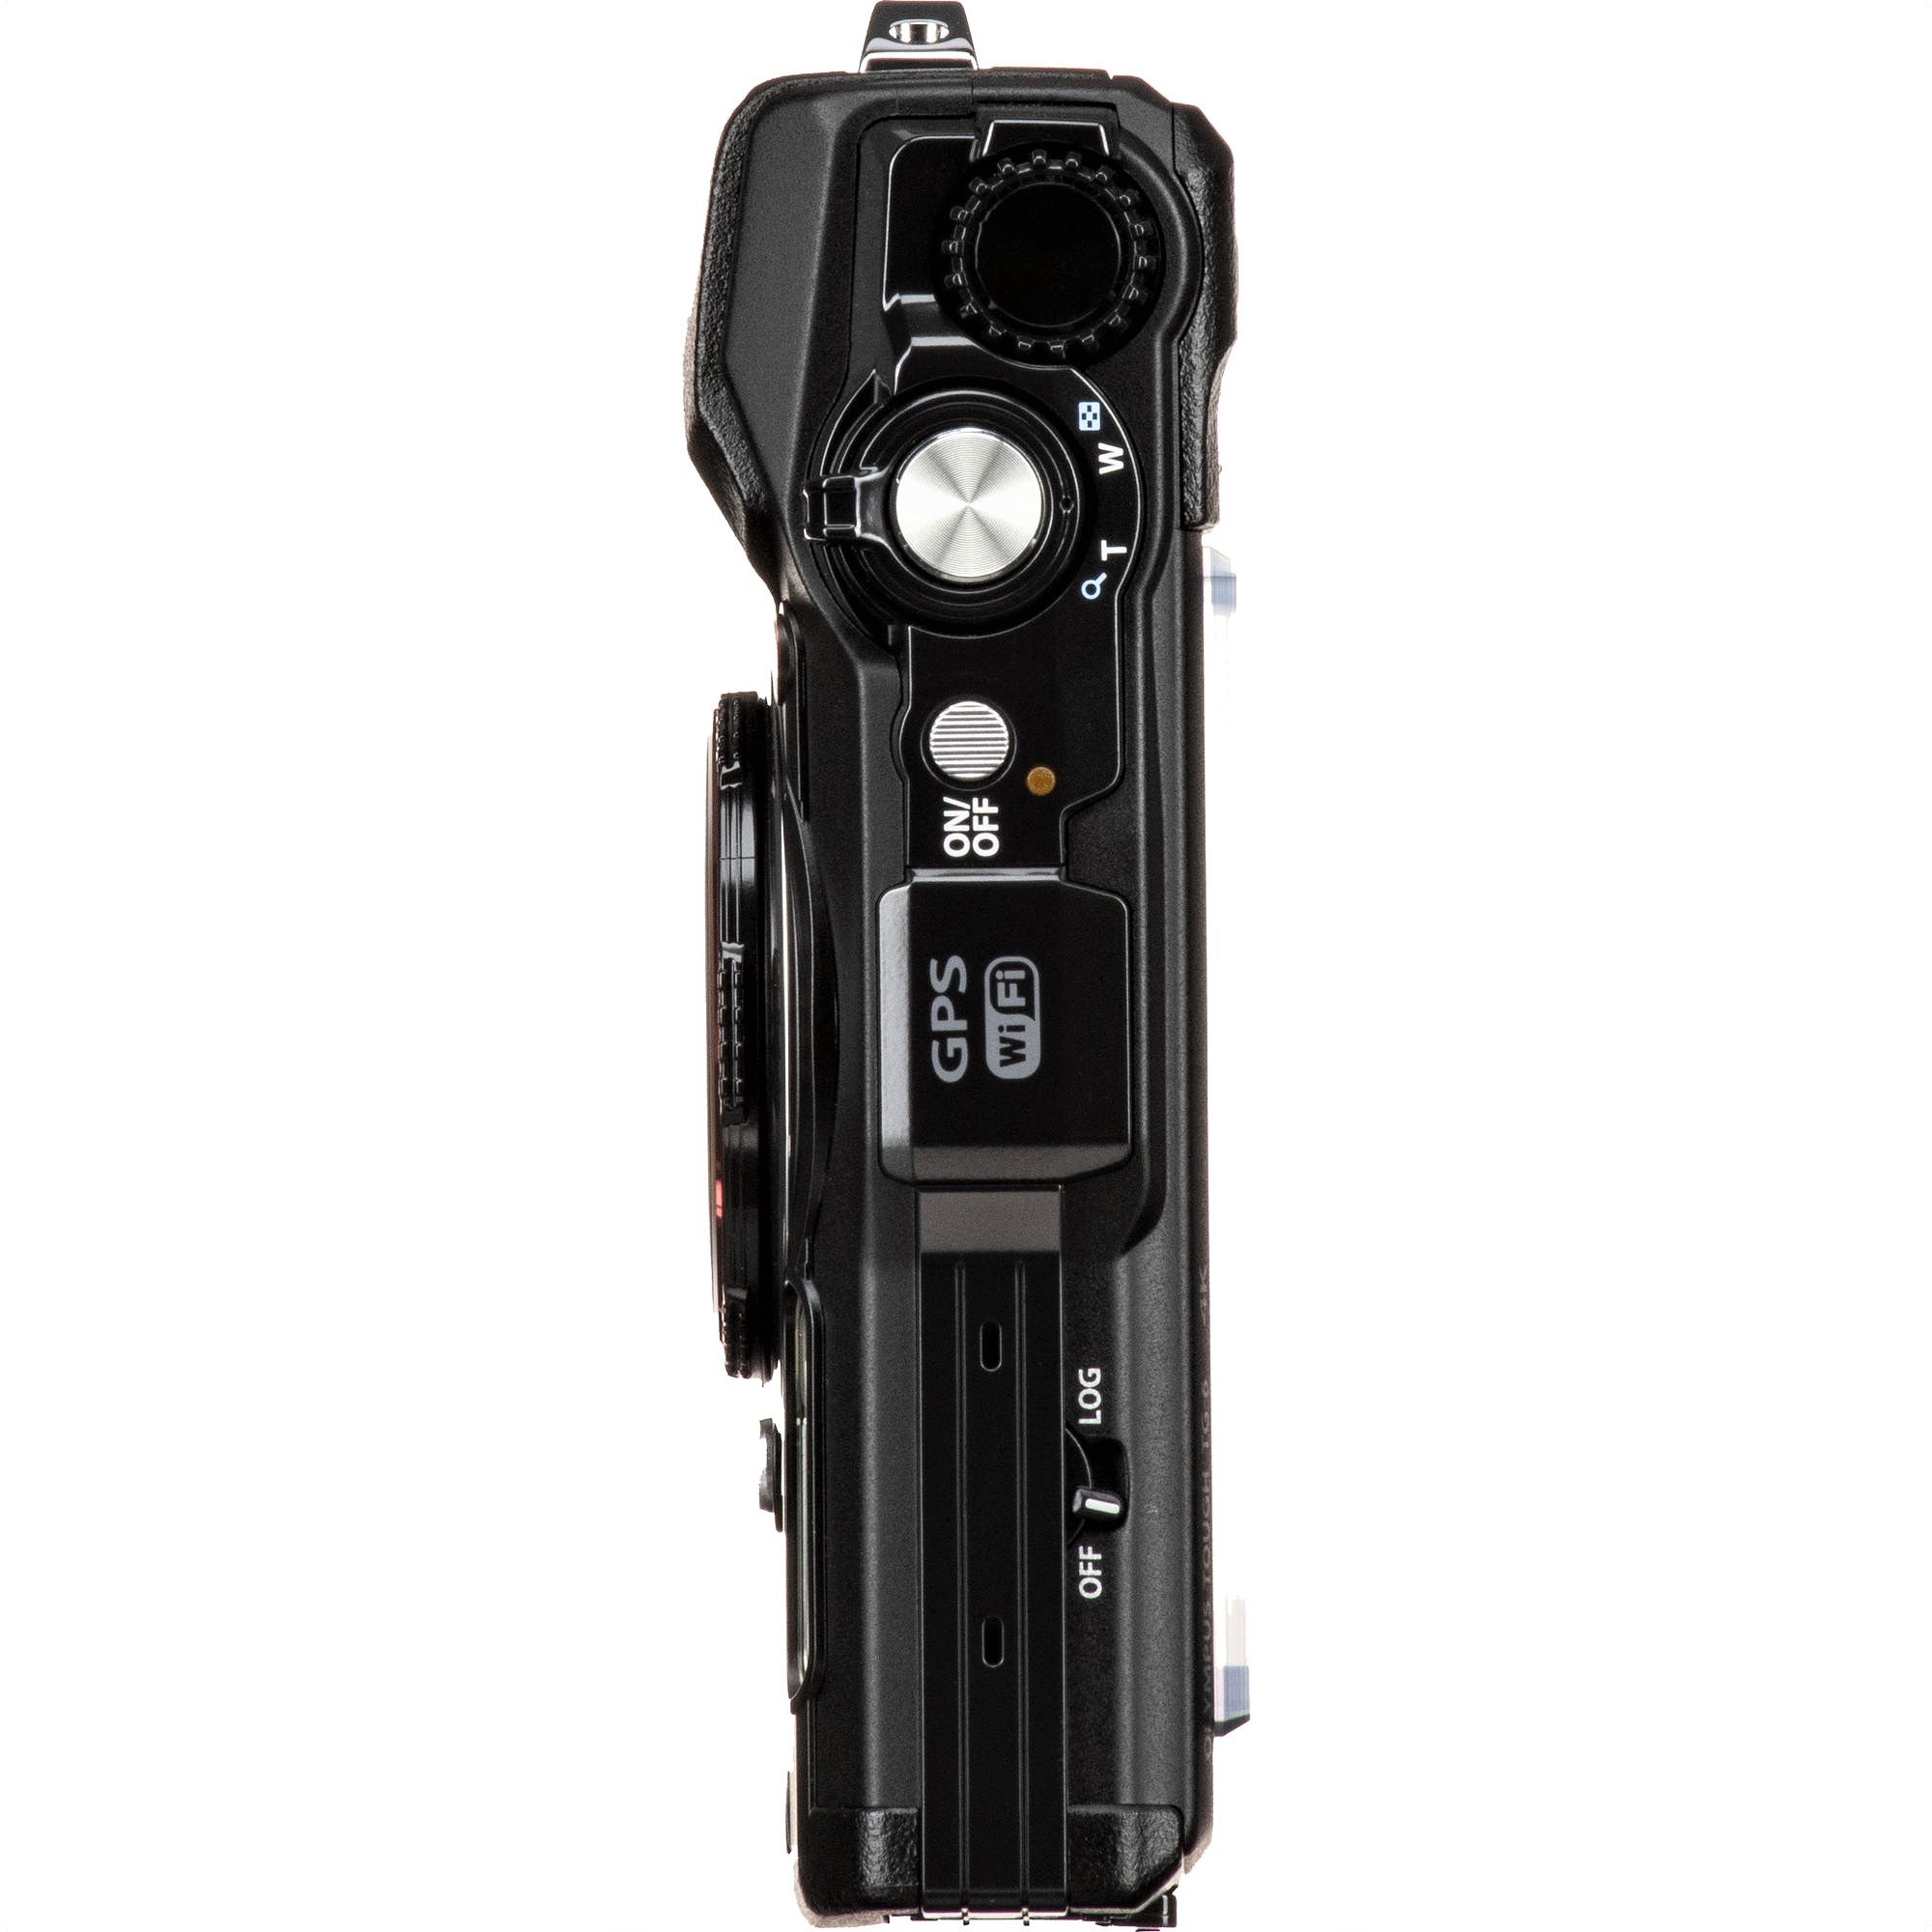 Olympus Tough TG-6 Digital Camera (Black) - Top View